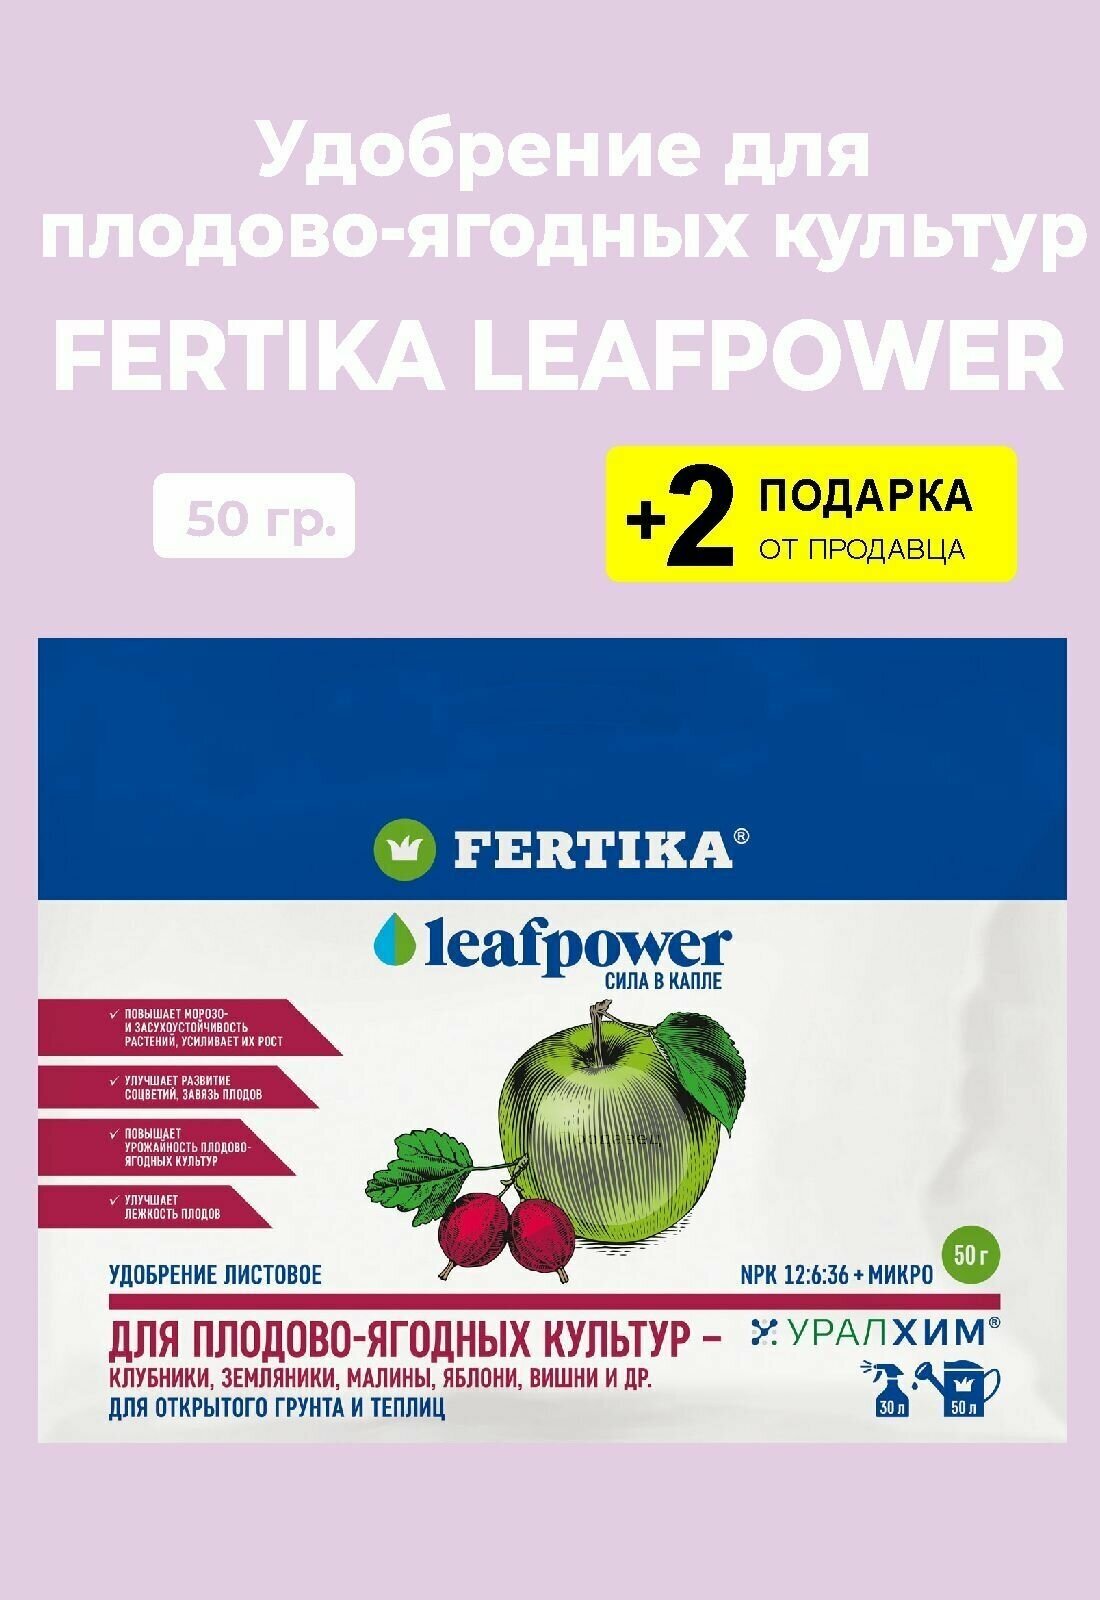 Удобрение Fertika Leafpower "Для Плодово-ягодных культур", 50 гр. + 2 Подарка